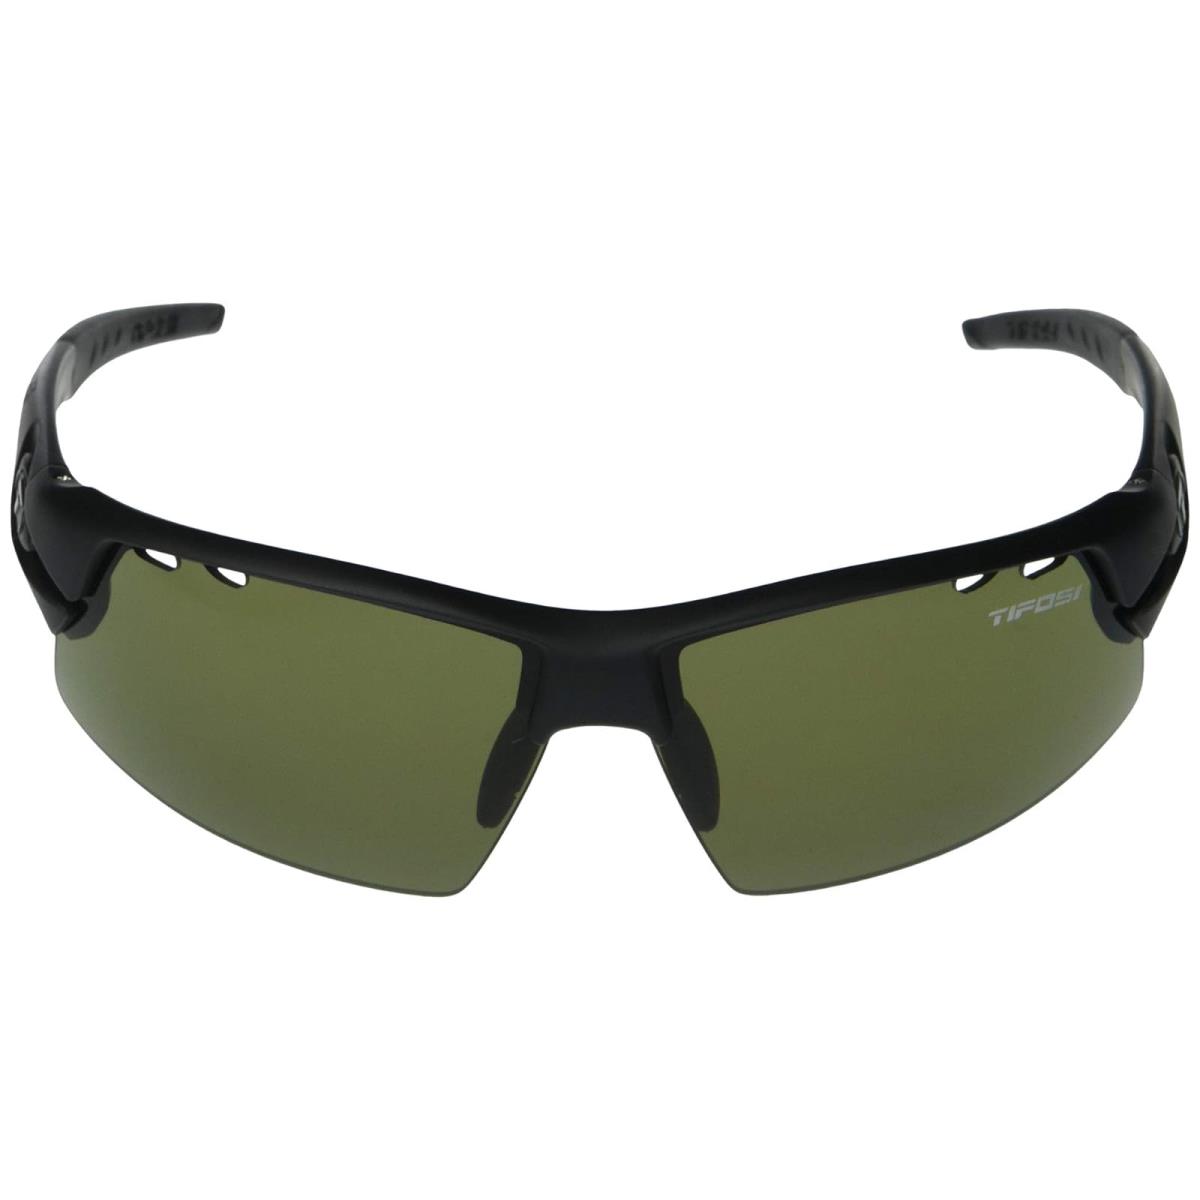 Unisex Sunglasses Tifosi Optics Crit Golf